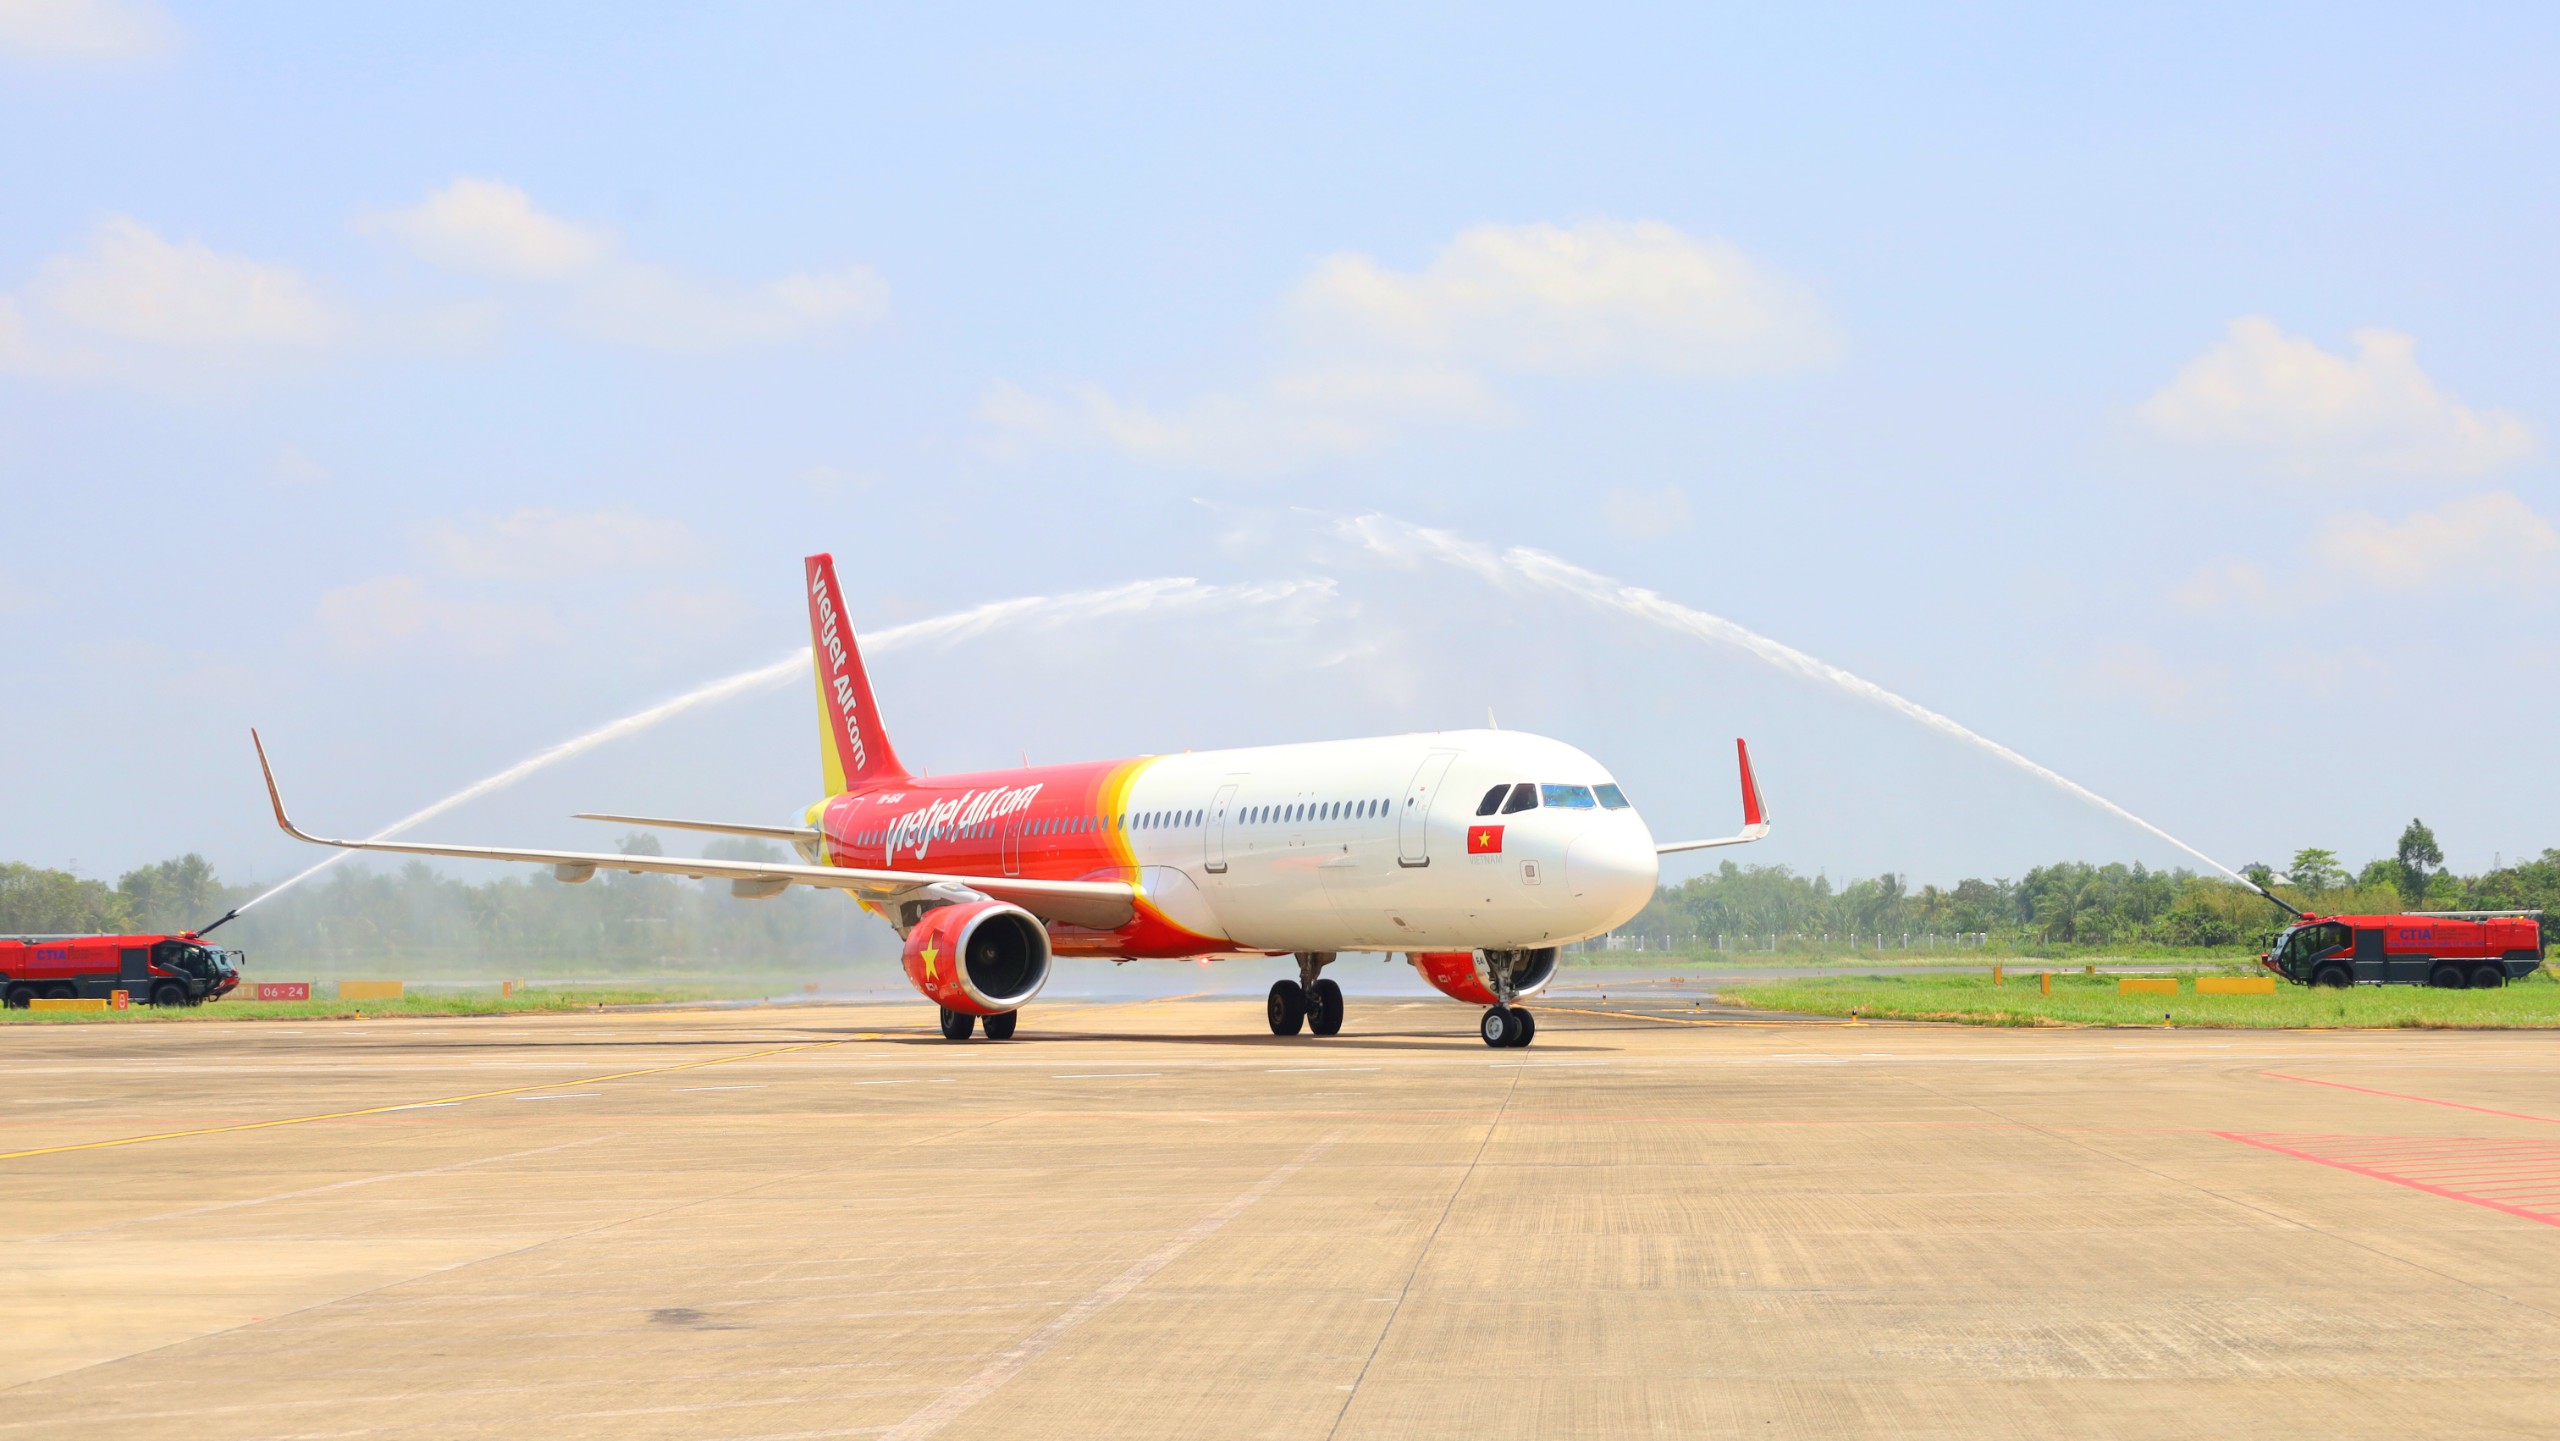 Chuyến bay từ Cảng hàng không quốc tế Vân Đồn (Quảng Ninh) đến TP. Cần Thơ và ngược lại góp phần rút ngắn khoảng cách giữa Cần Thơ - Quảng Ninh chỉ còn 2 giờ bay.